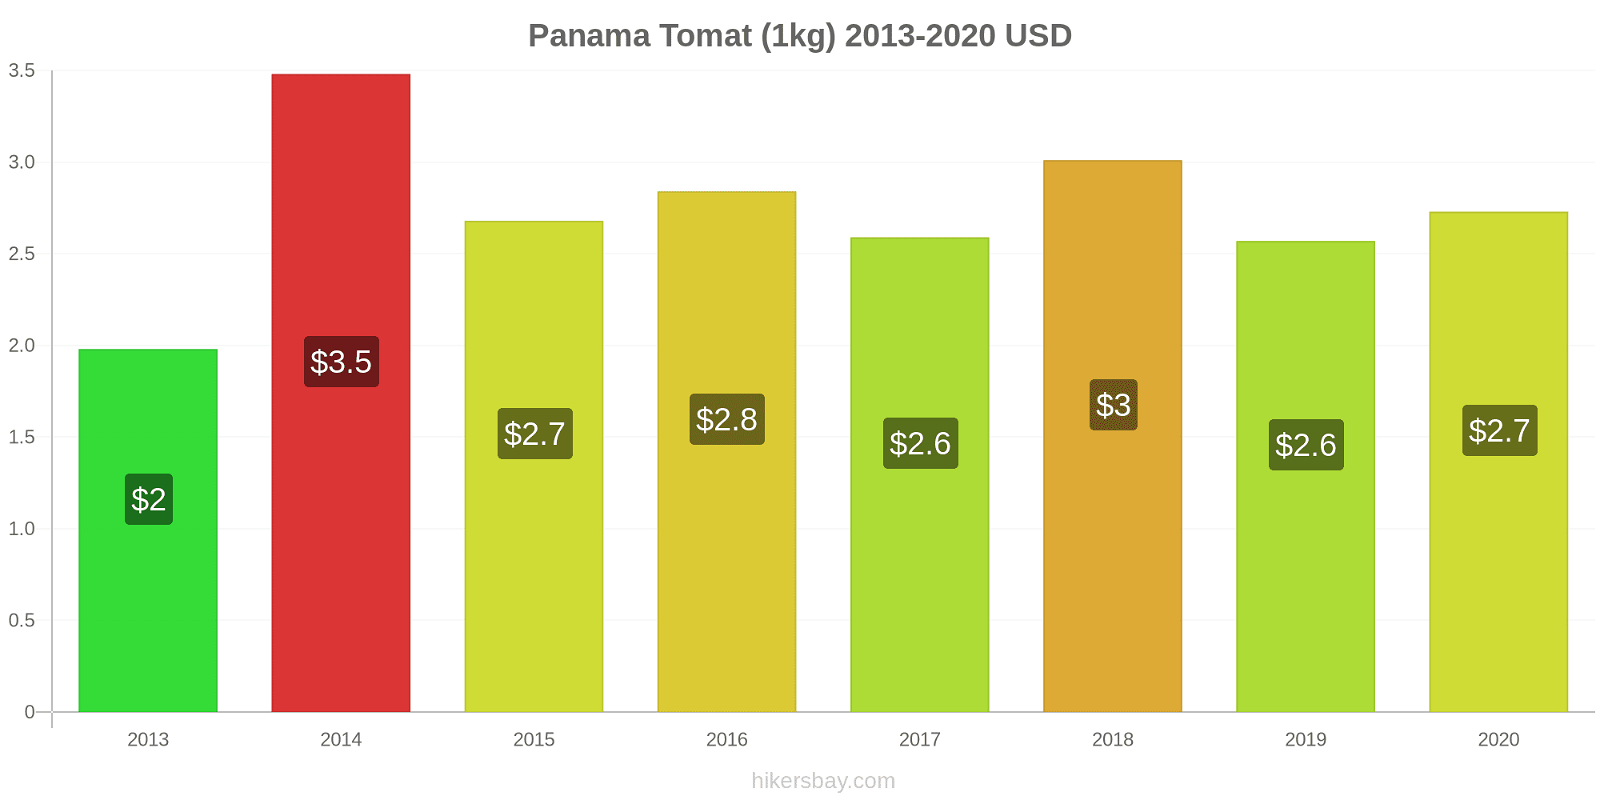 Panama prisændringer Tomat (1kg) hikersbay.com